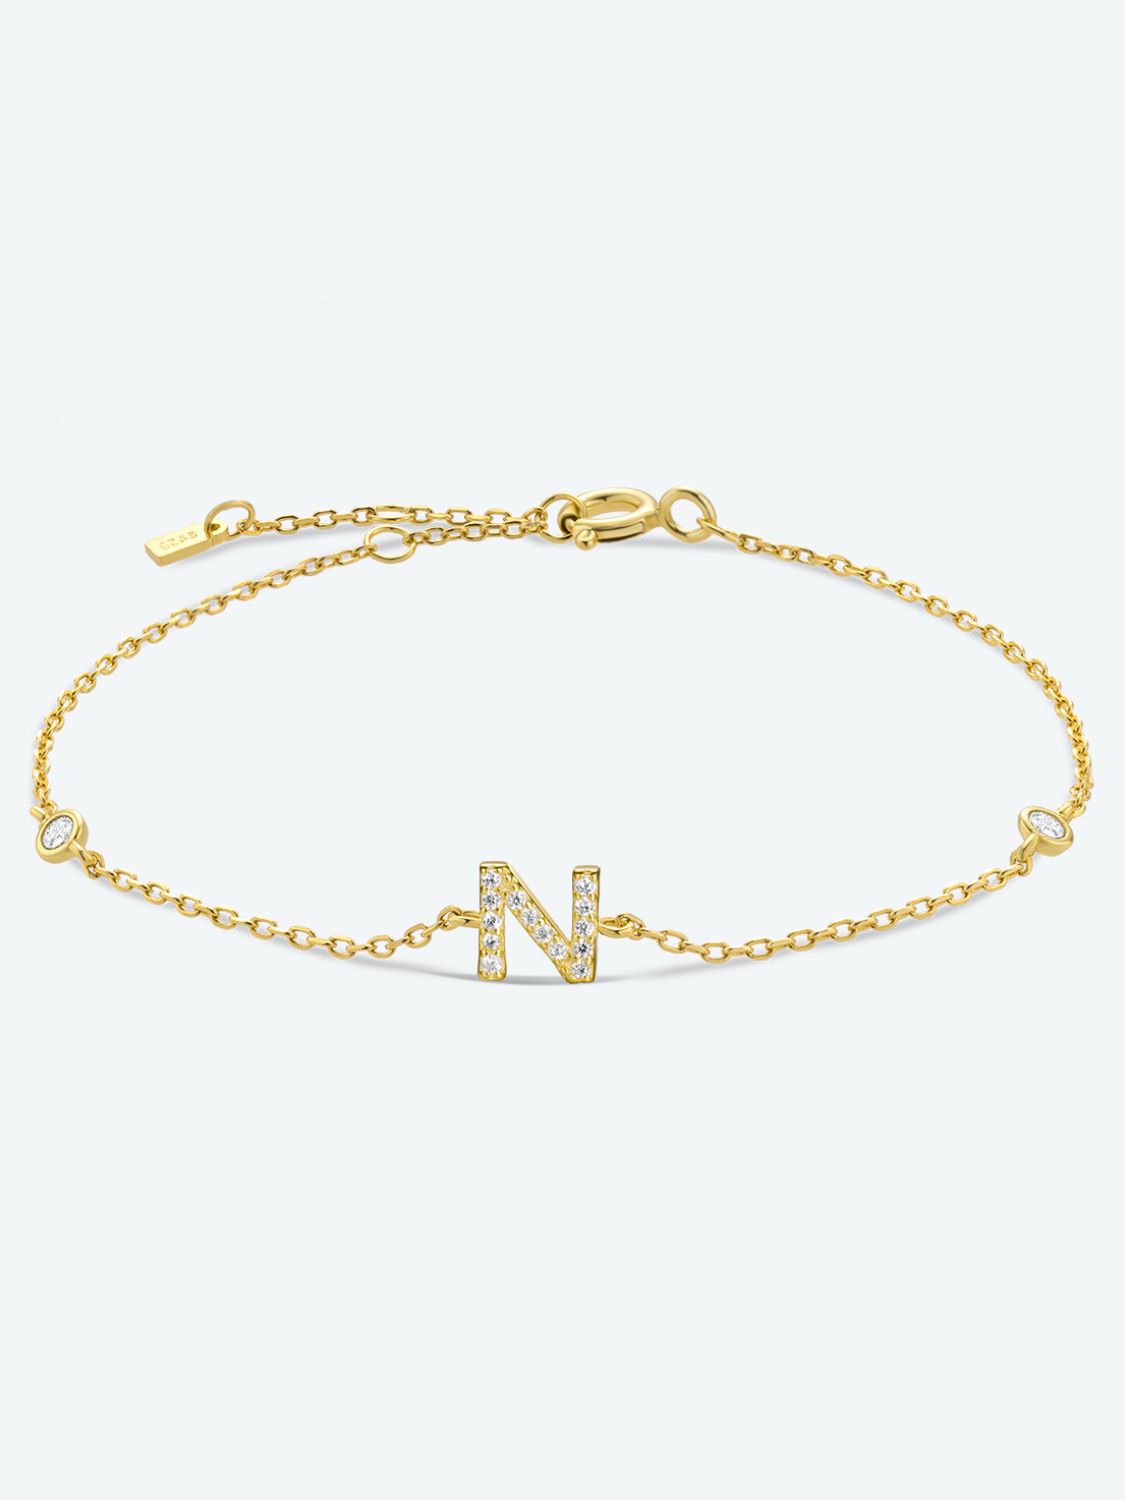 L To P Zircon 925 Sterling Silver Bracelet - N-Gold / One Size - Women’s Jewelry - Bracelets - 13 - 2024